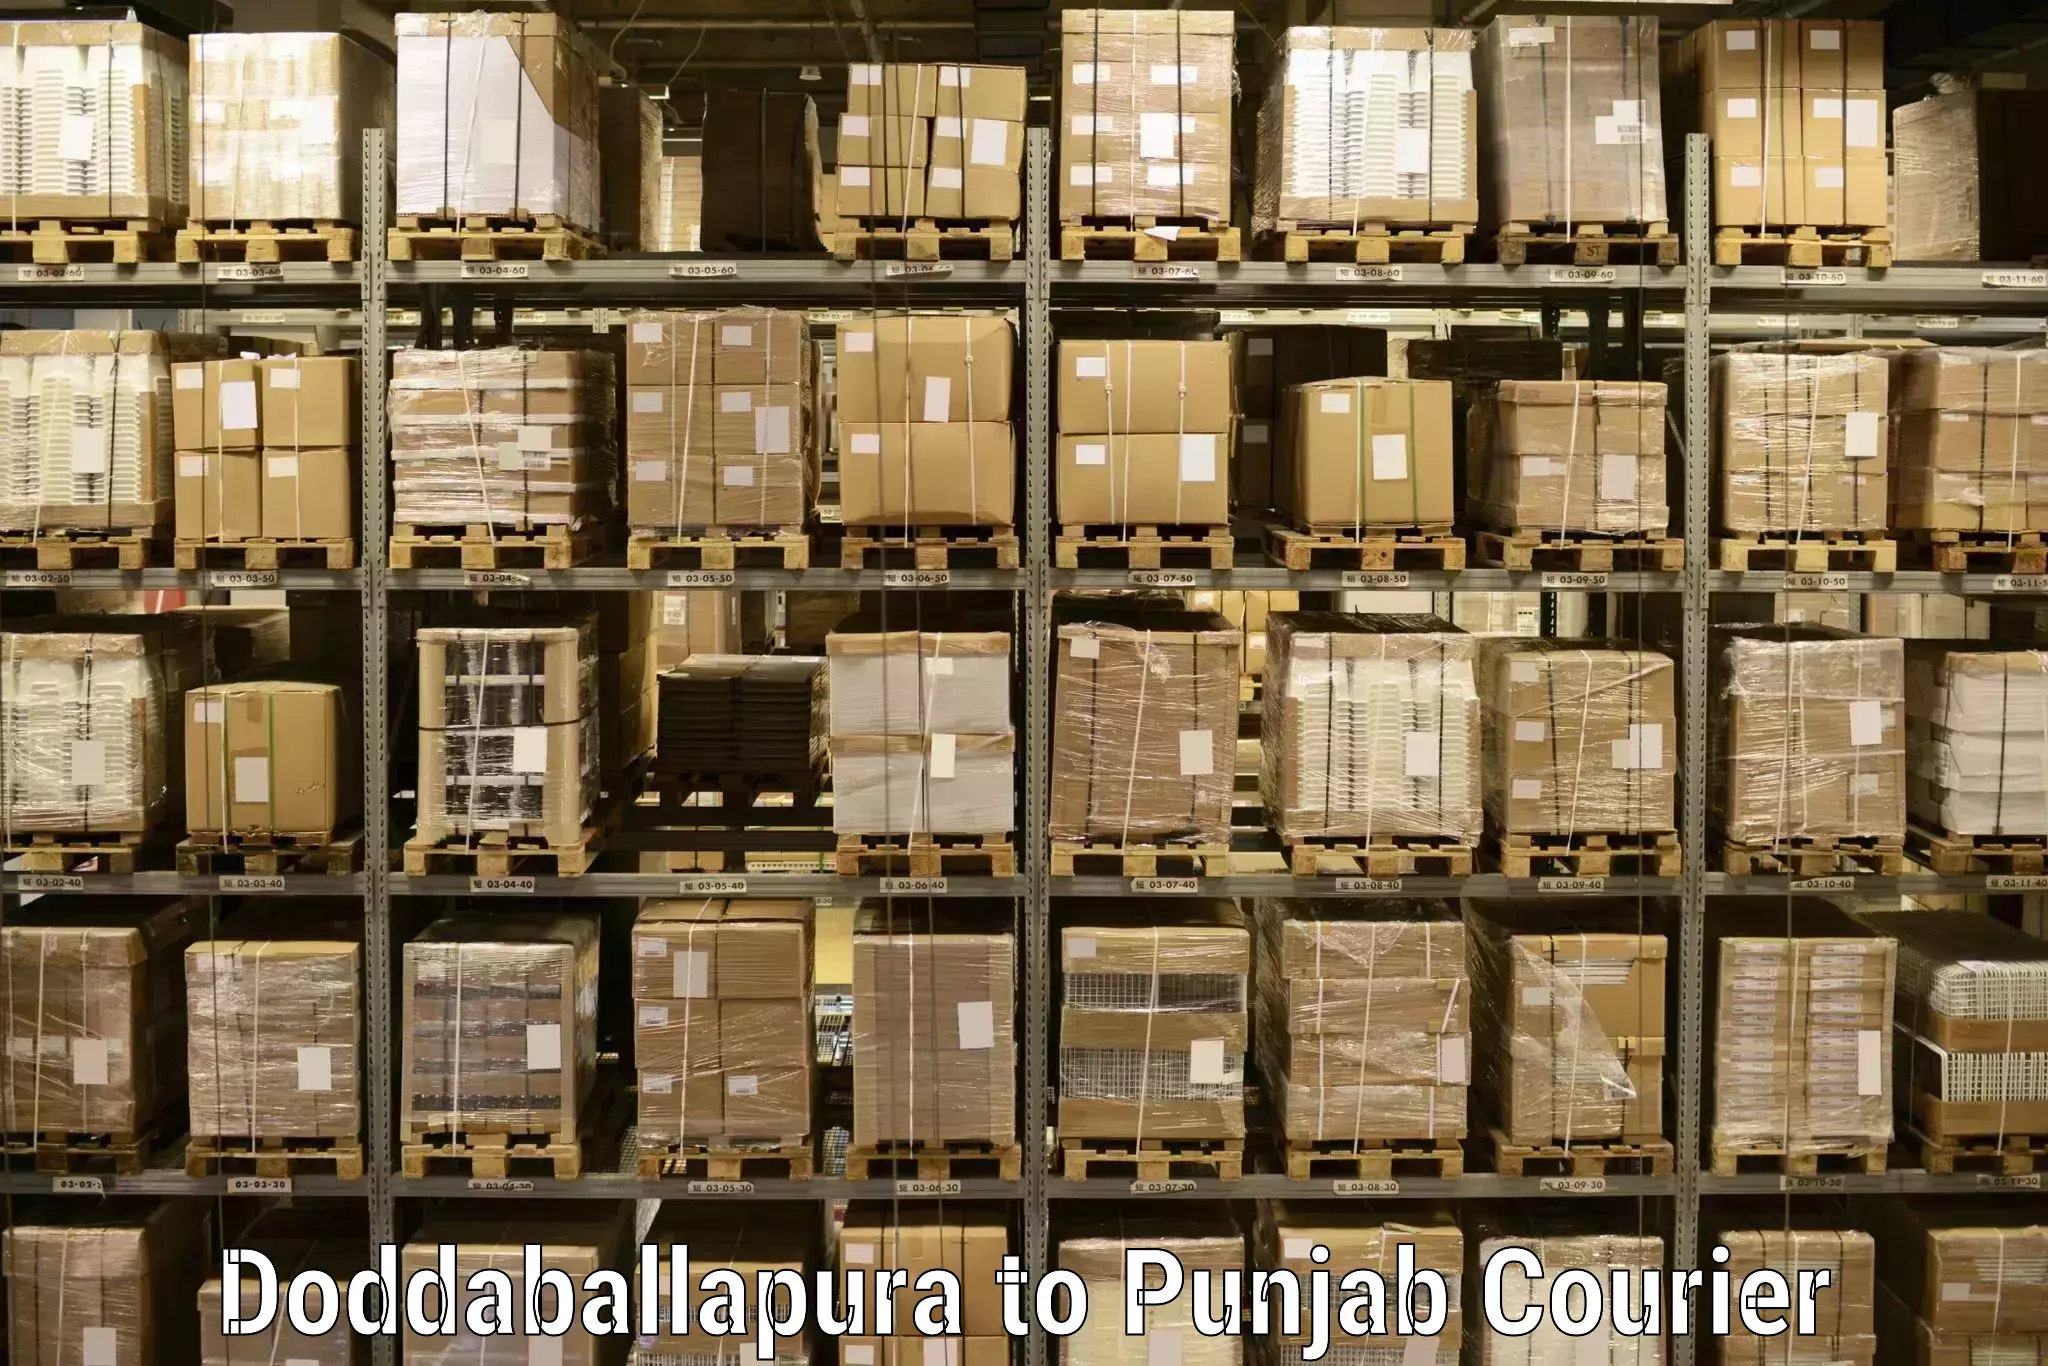 Weekend courier service Doddaballapura to Central University of Punjab Bathinda